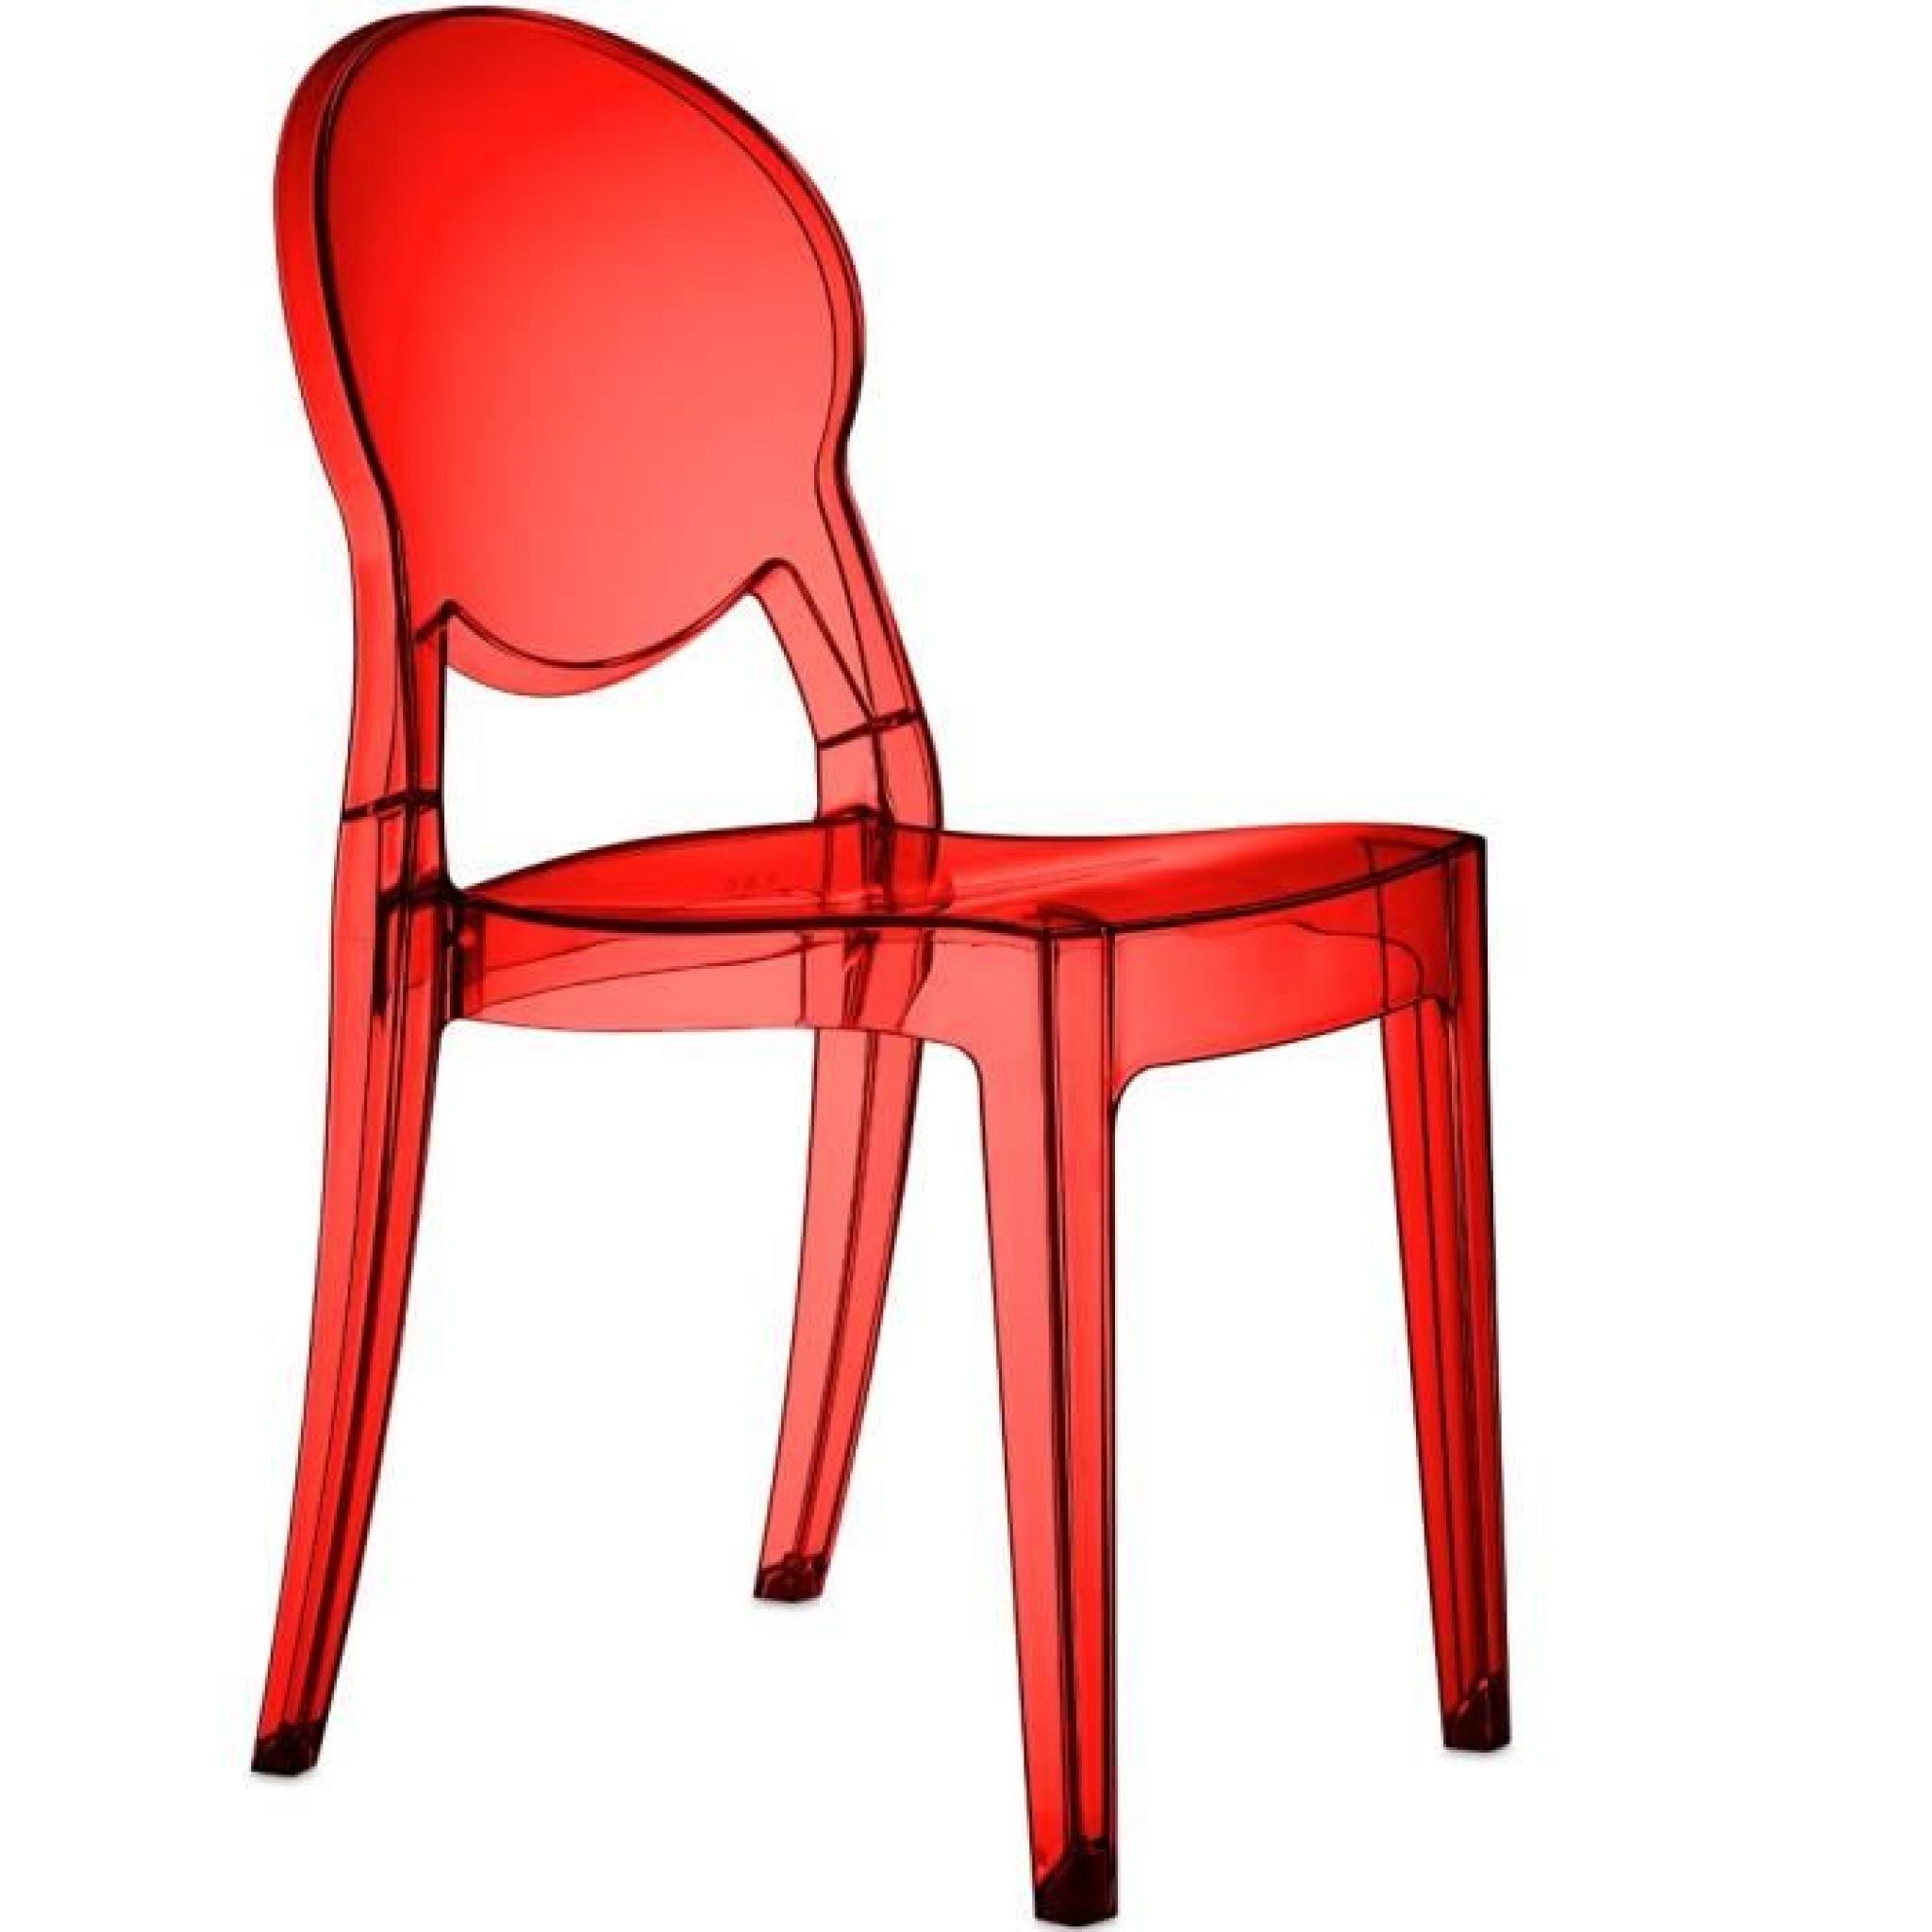 Chaise design Régence rouge Couleur Rouge Matière. Polycarbonate pas cher